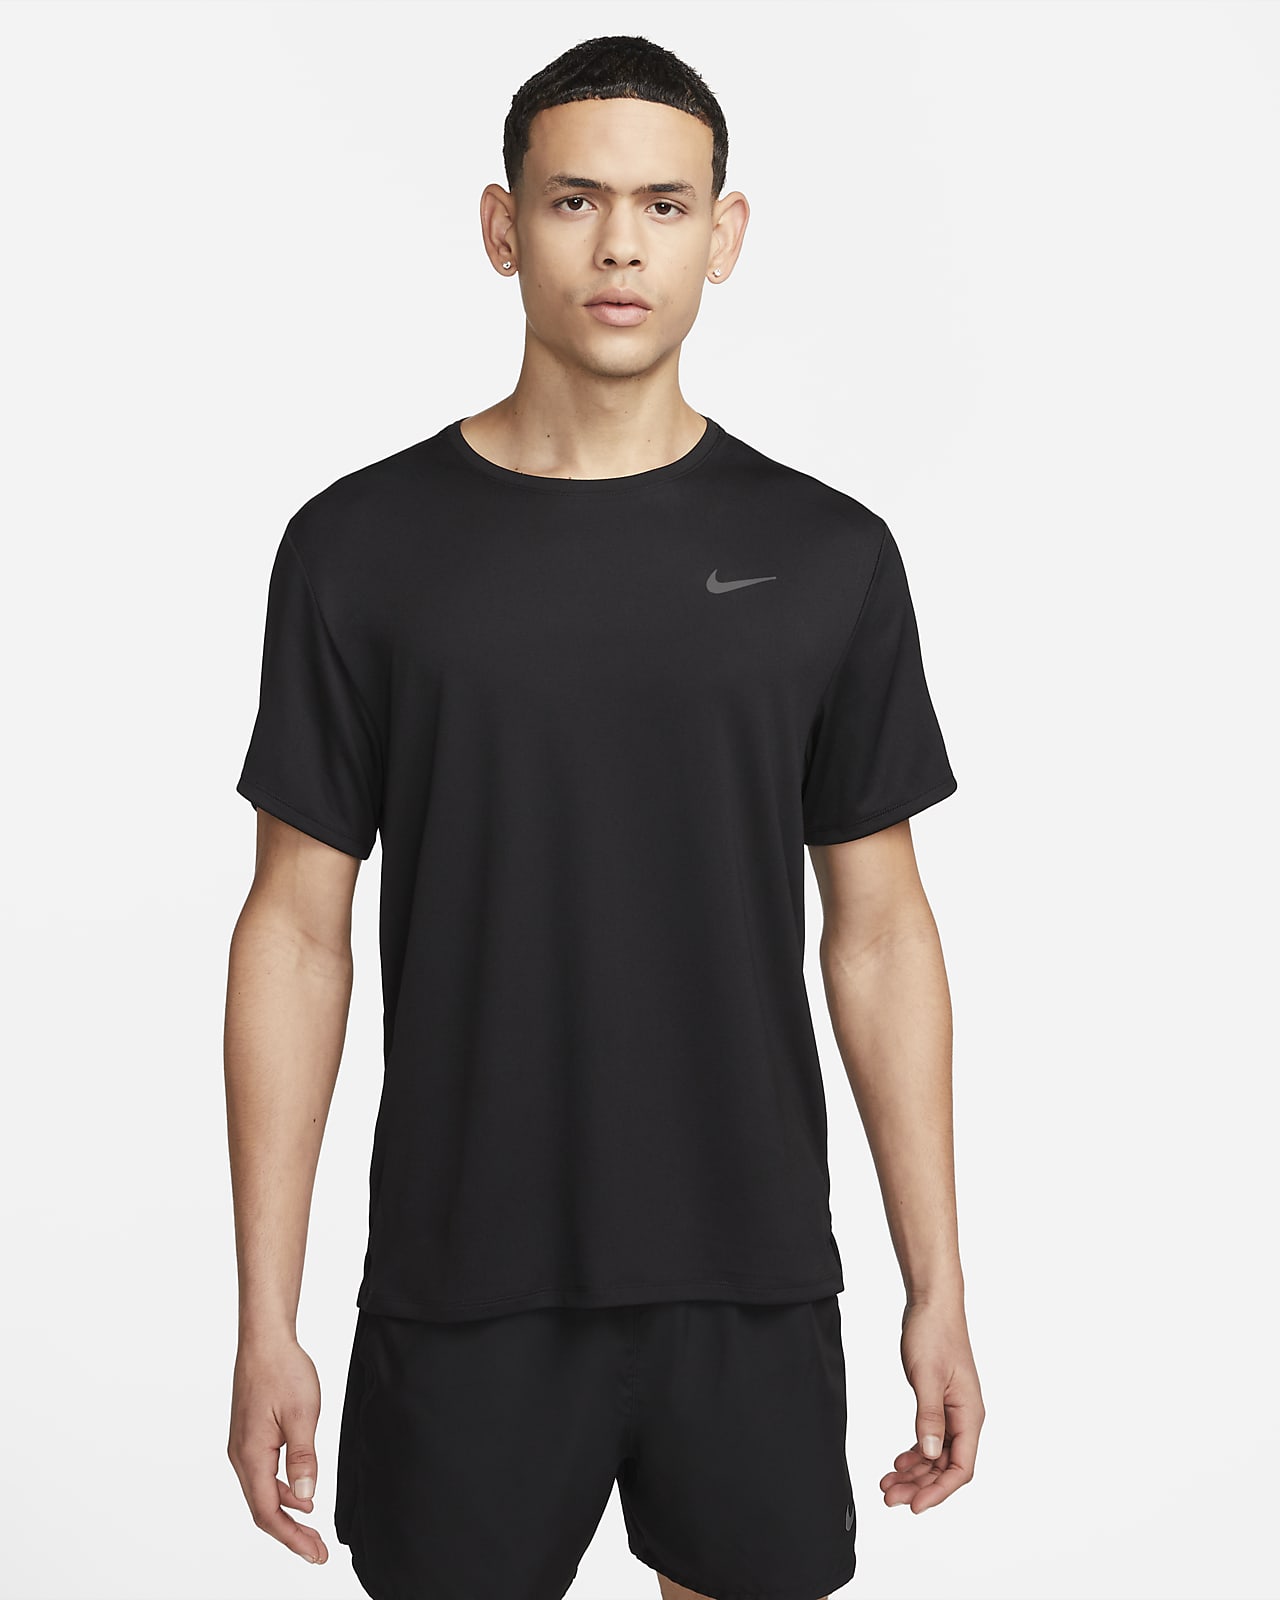 Ανδρική κοντομάνικη μπλούζα για τρέξιμο Dri-FIT UV Nike Miler